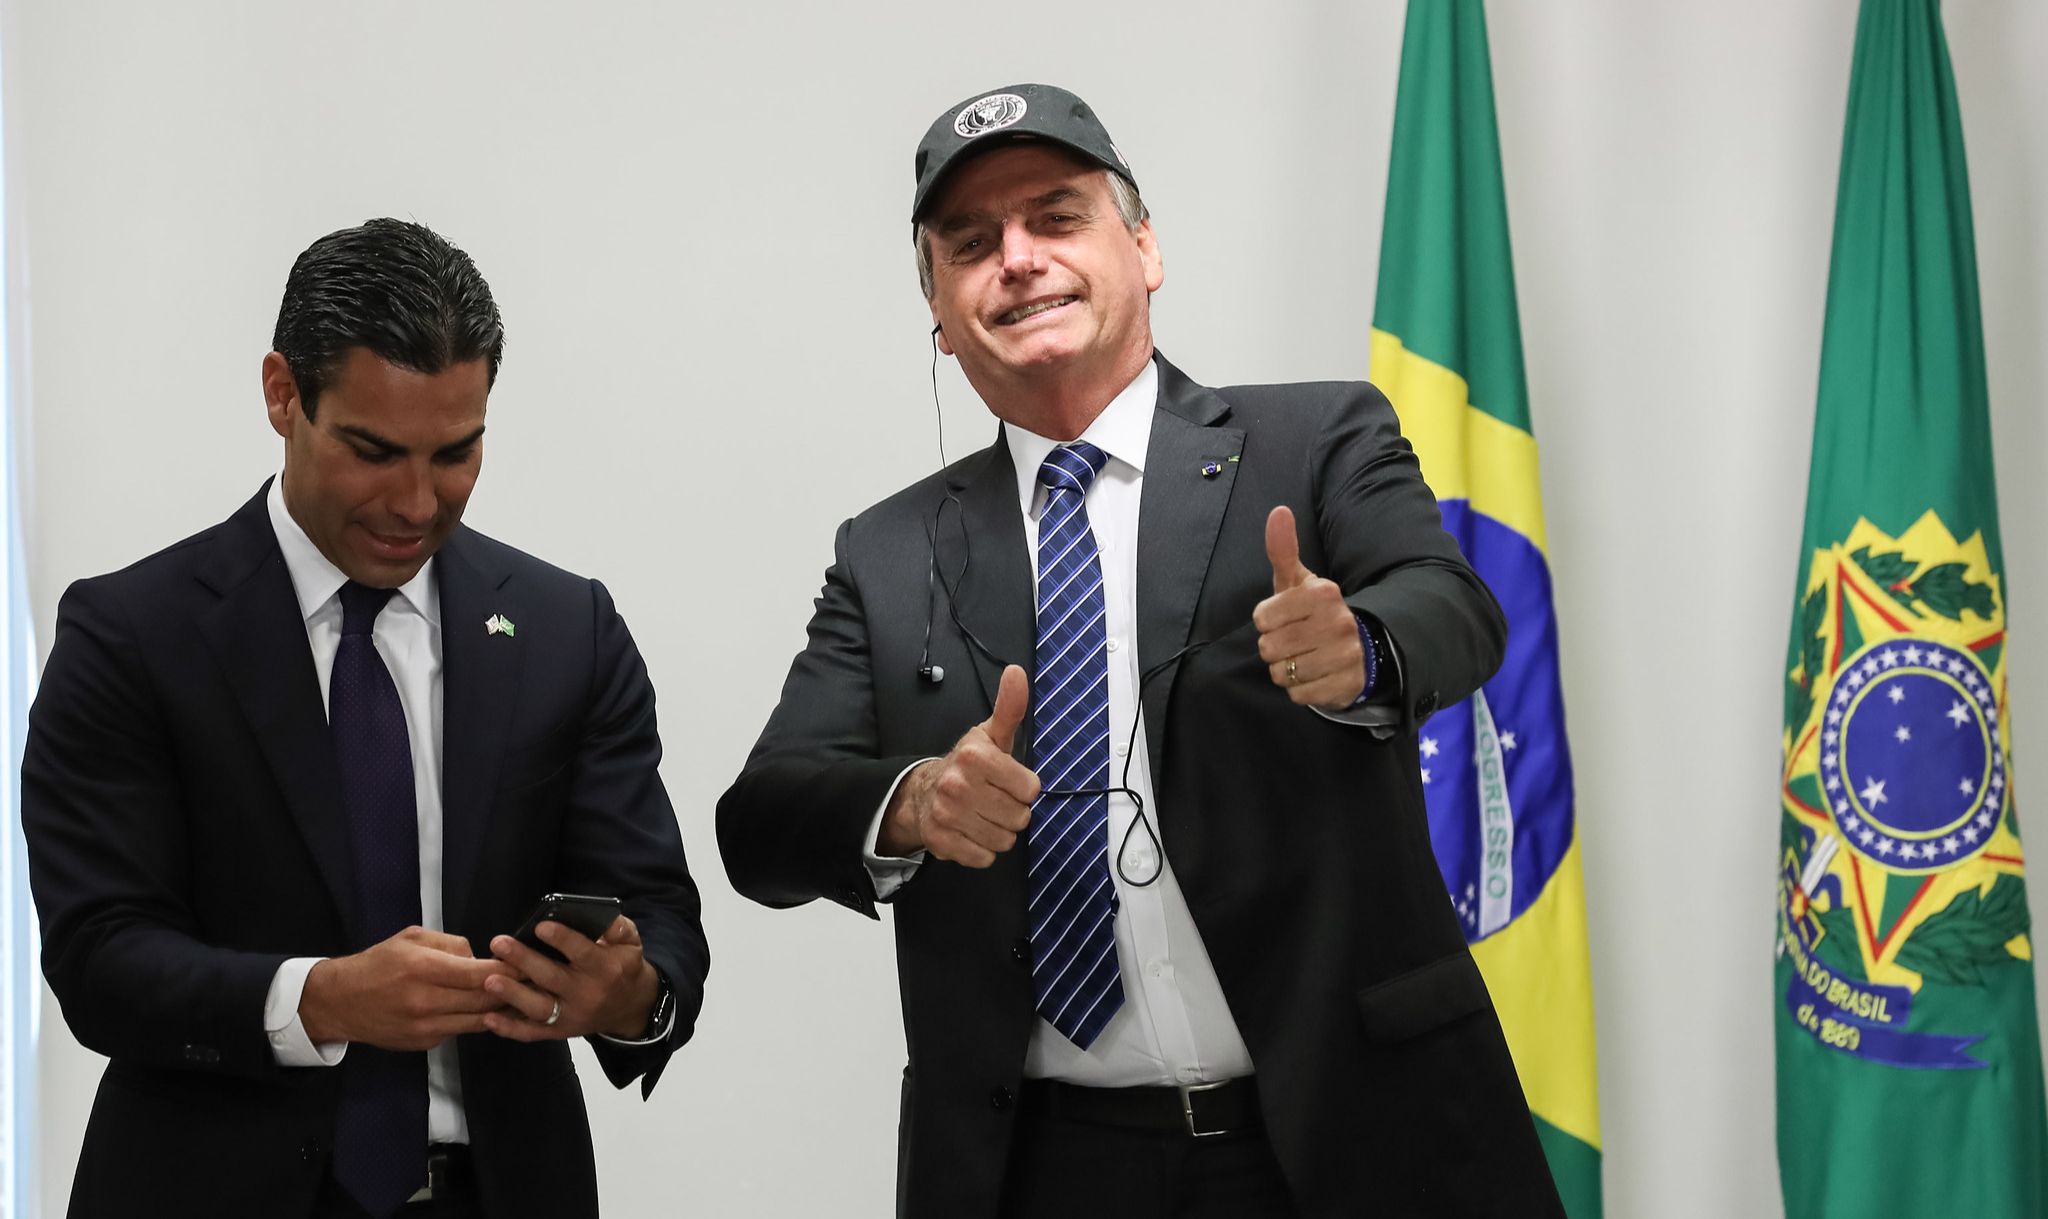 Especialistas em análise de discurso temem que normalização de uma linguagem "crua" tenha consequências para a legitimidade do país, tanto no cenário internacional quanto no nível das instituições democráticas no Brasil